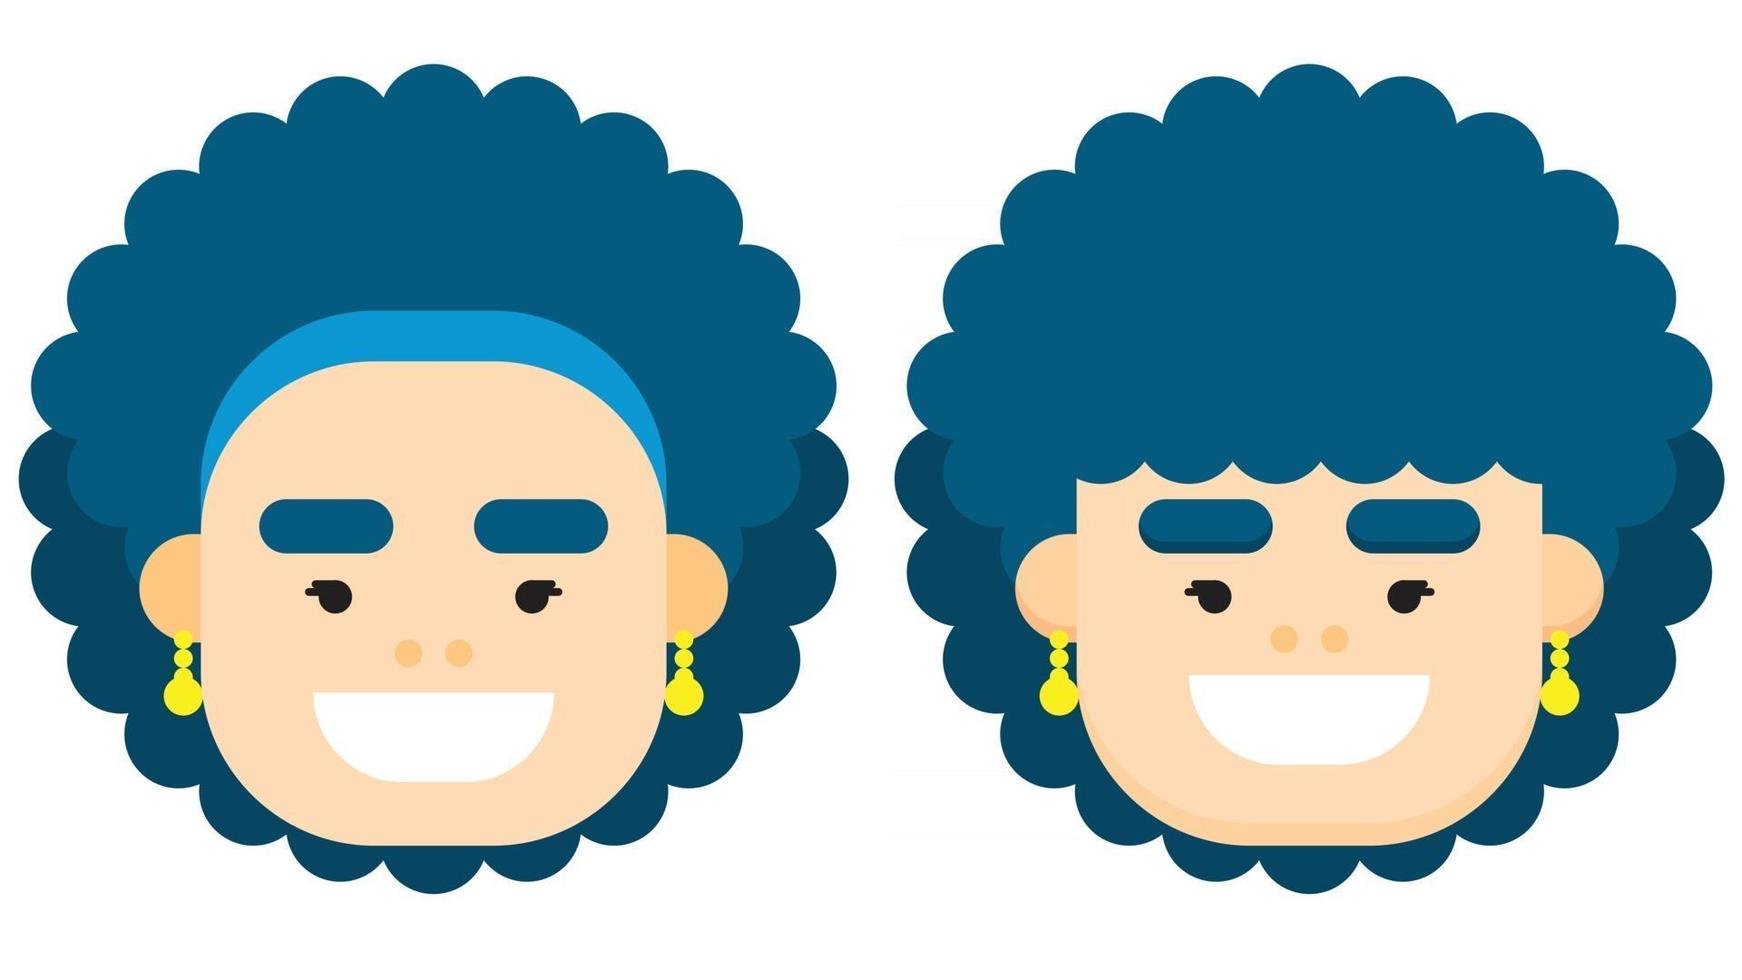 visage de femme design plat avec des cheveux bouclés bleus avec des styles différents. illustration vectorielle. vecteur